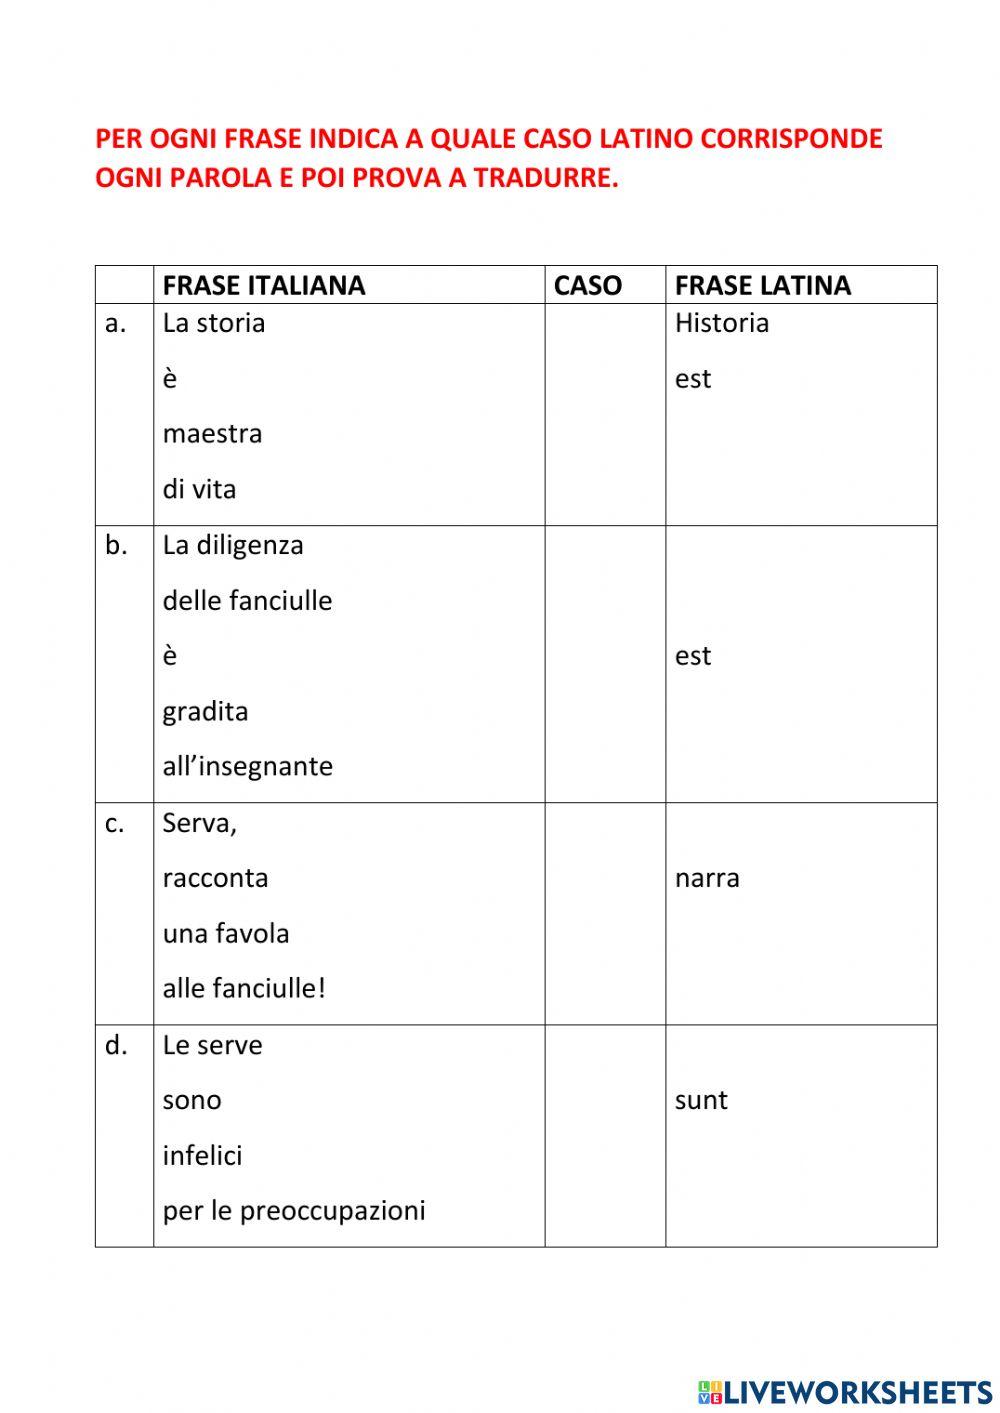 Prima traduzione latino